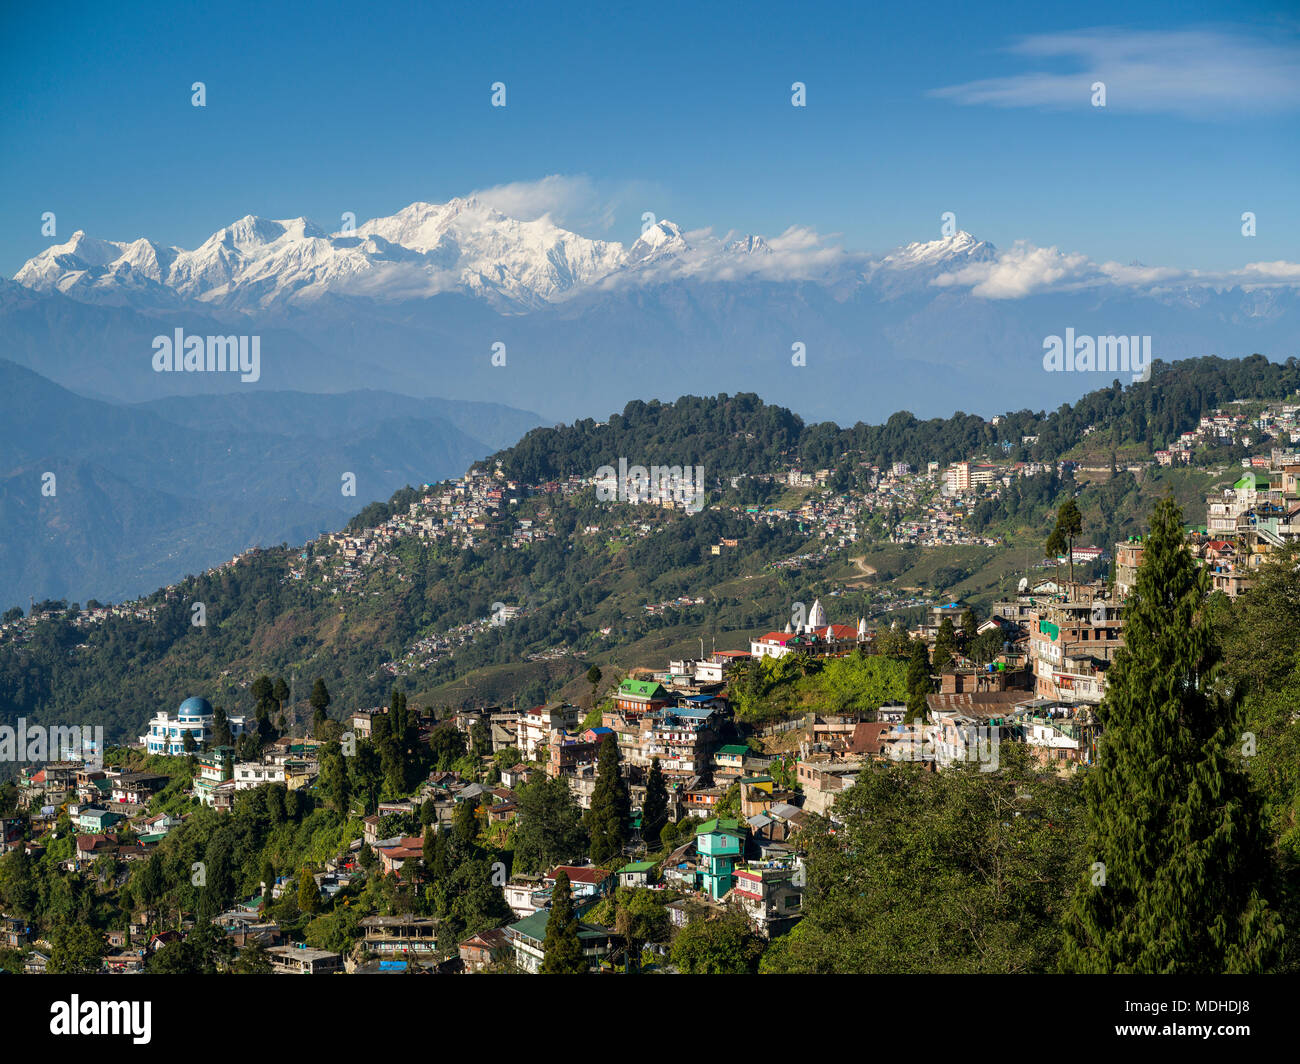 Ville sur une montagne avec le relief, les sommets enneigés de l'Himalaya dans la distance, Darjeeling, West Bengal, India Banque D'Images